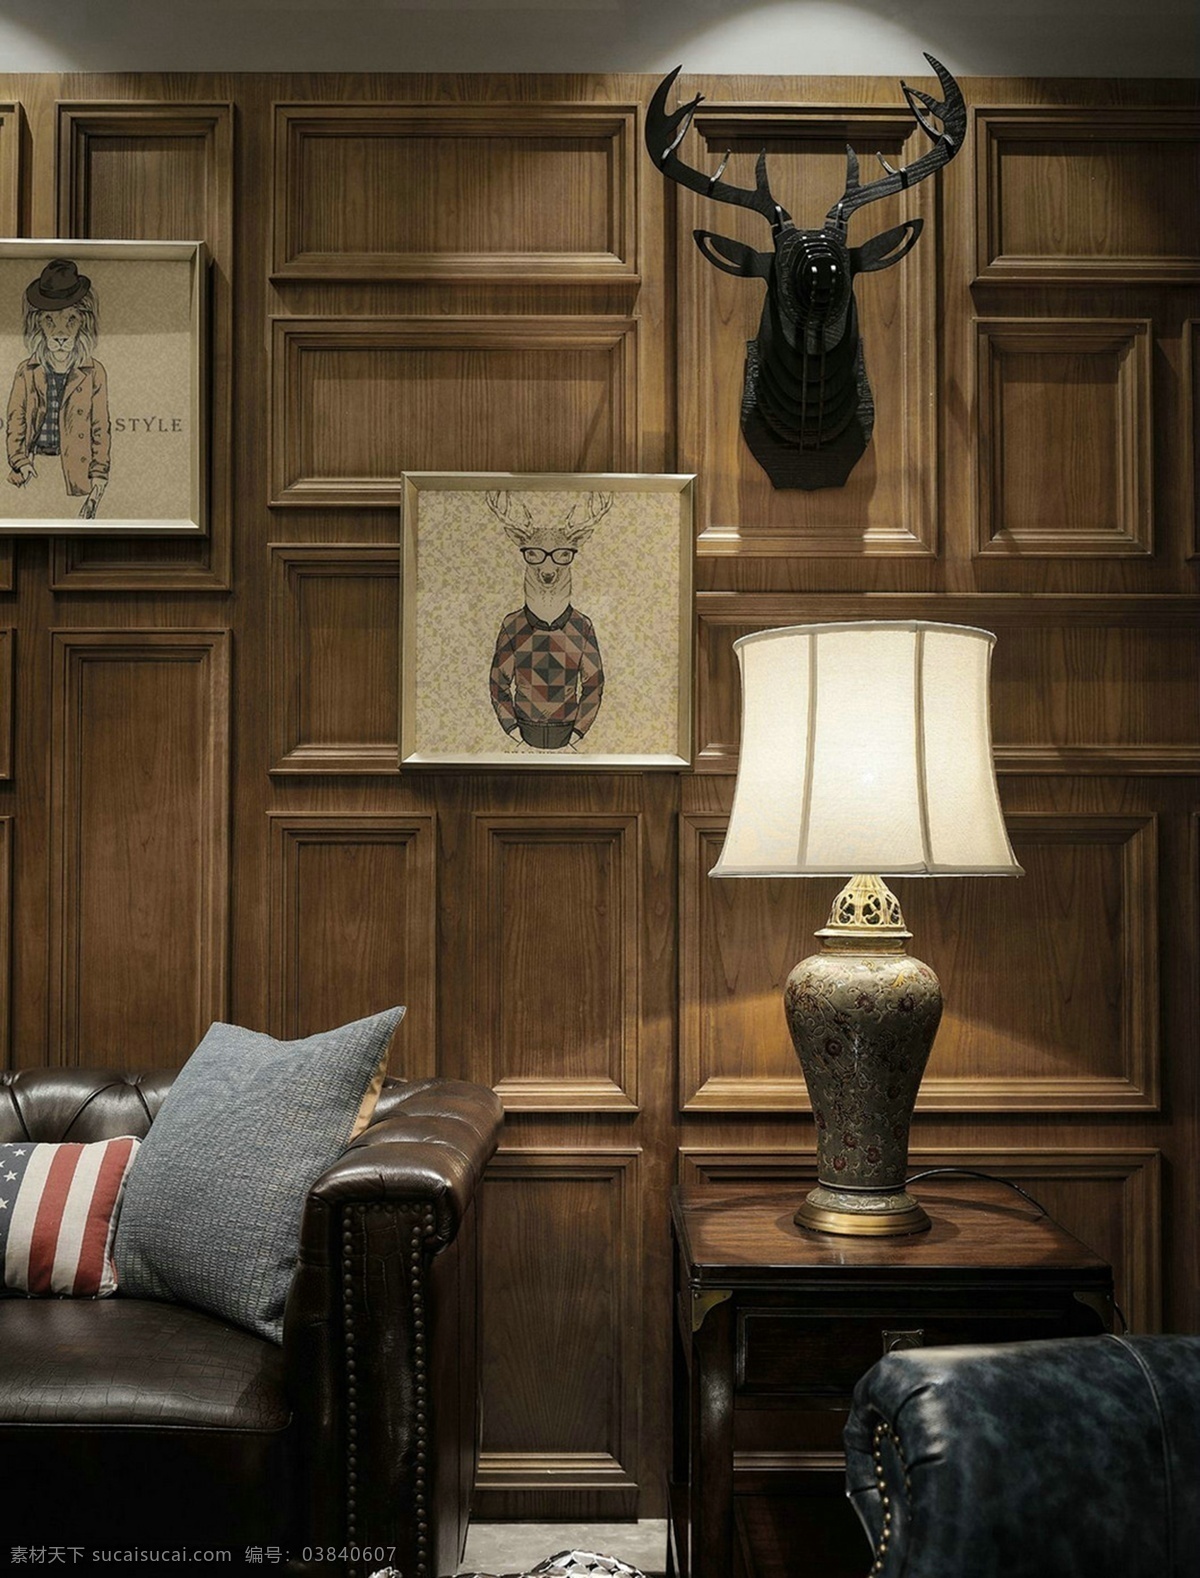 复古 风格 室内设计 家装 效果图 复古风格 家装效果图 台灯 牛角 木质 相册画 抱枕 黑色沙发